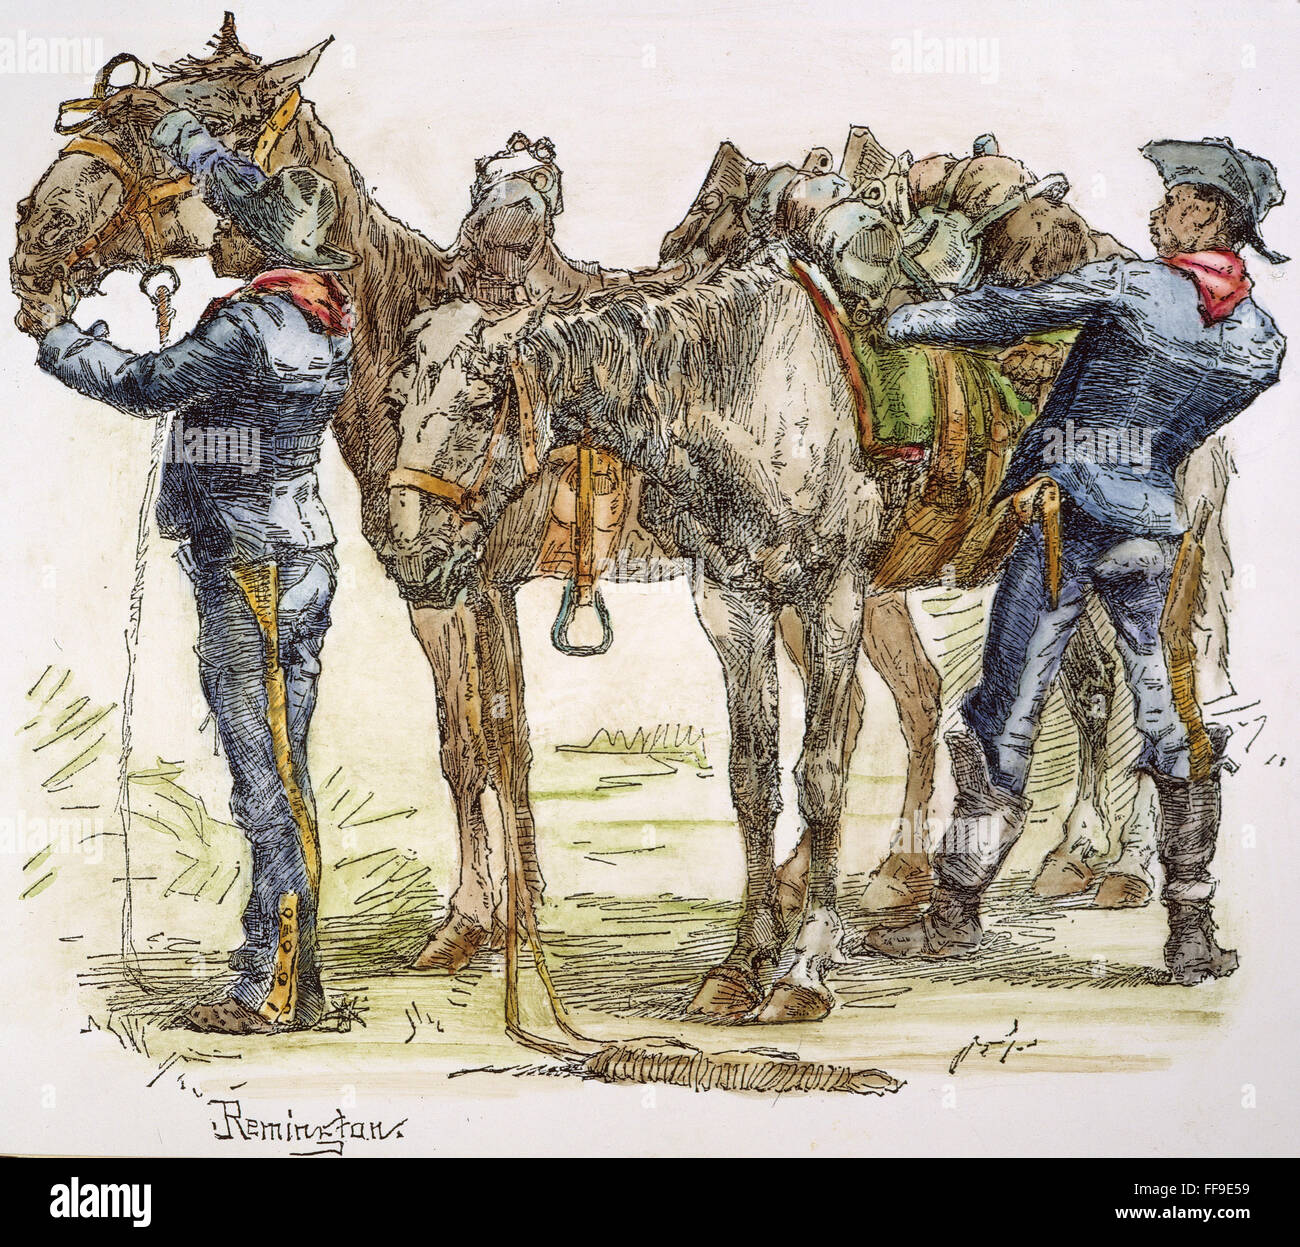 BUFFALO SOLDIERS, 1886. /nEnlisted Männer der 10. Kavallerie (farbig) im Südwesten: Zeichnung, 1886 von Frederic Remington. Stockfoto